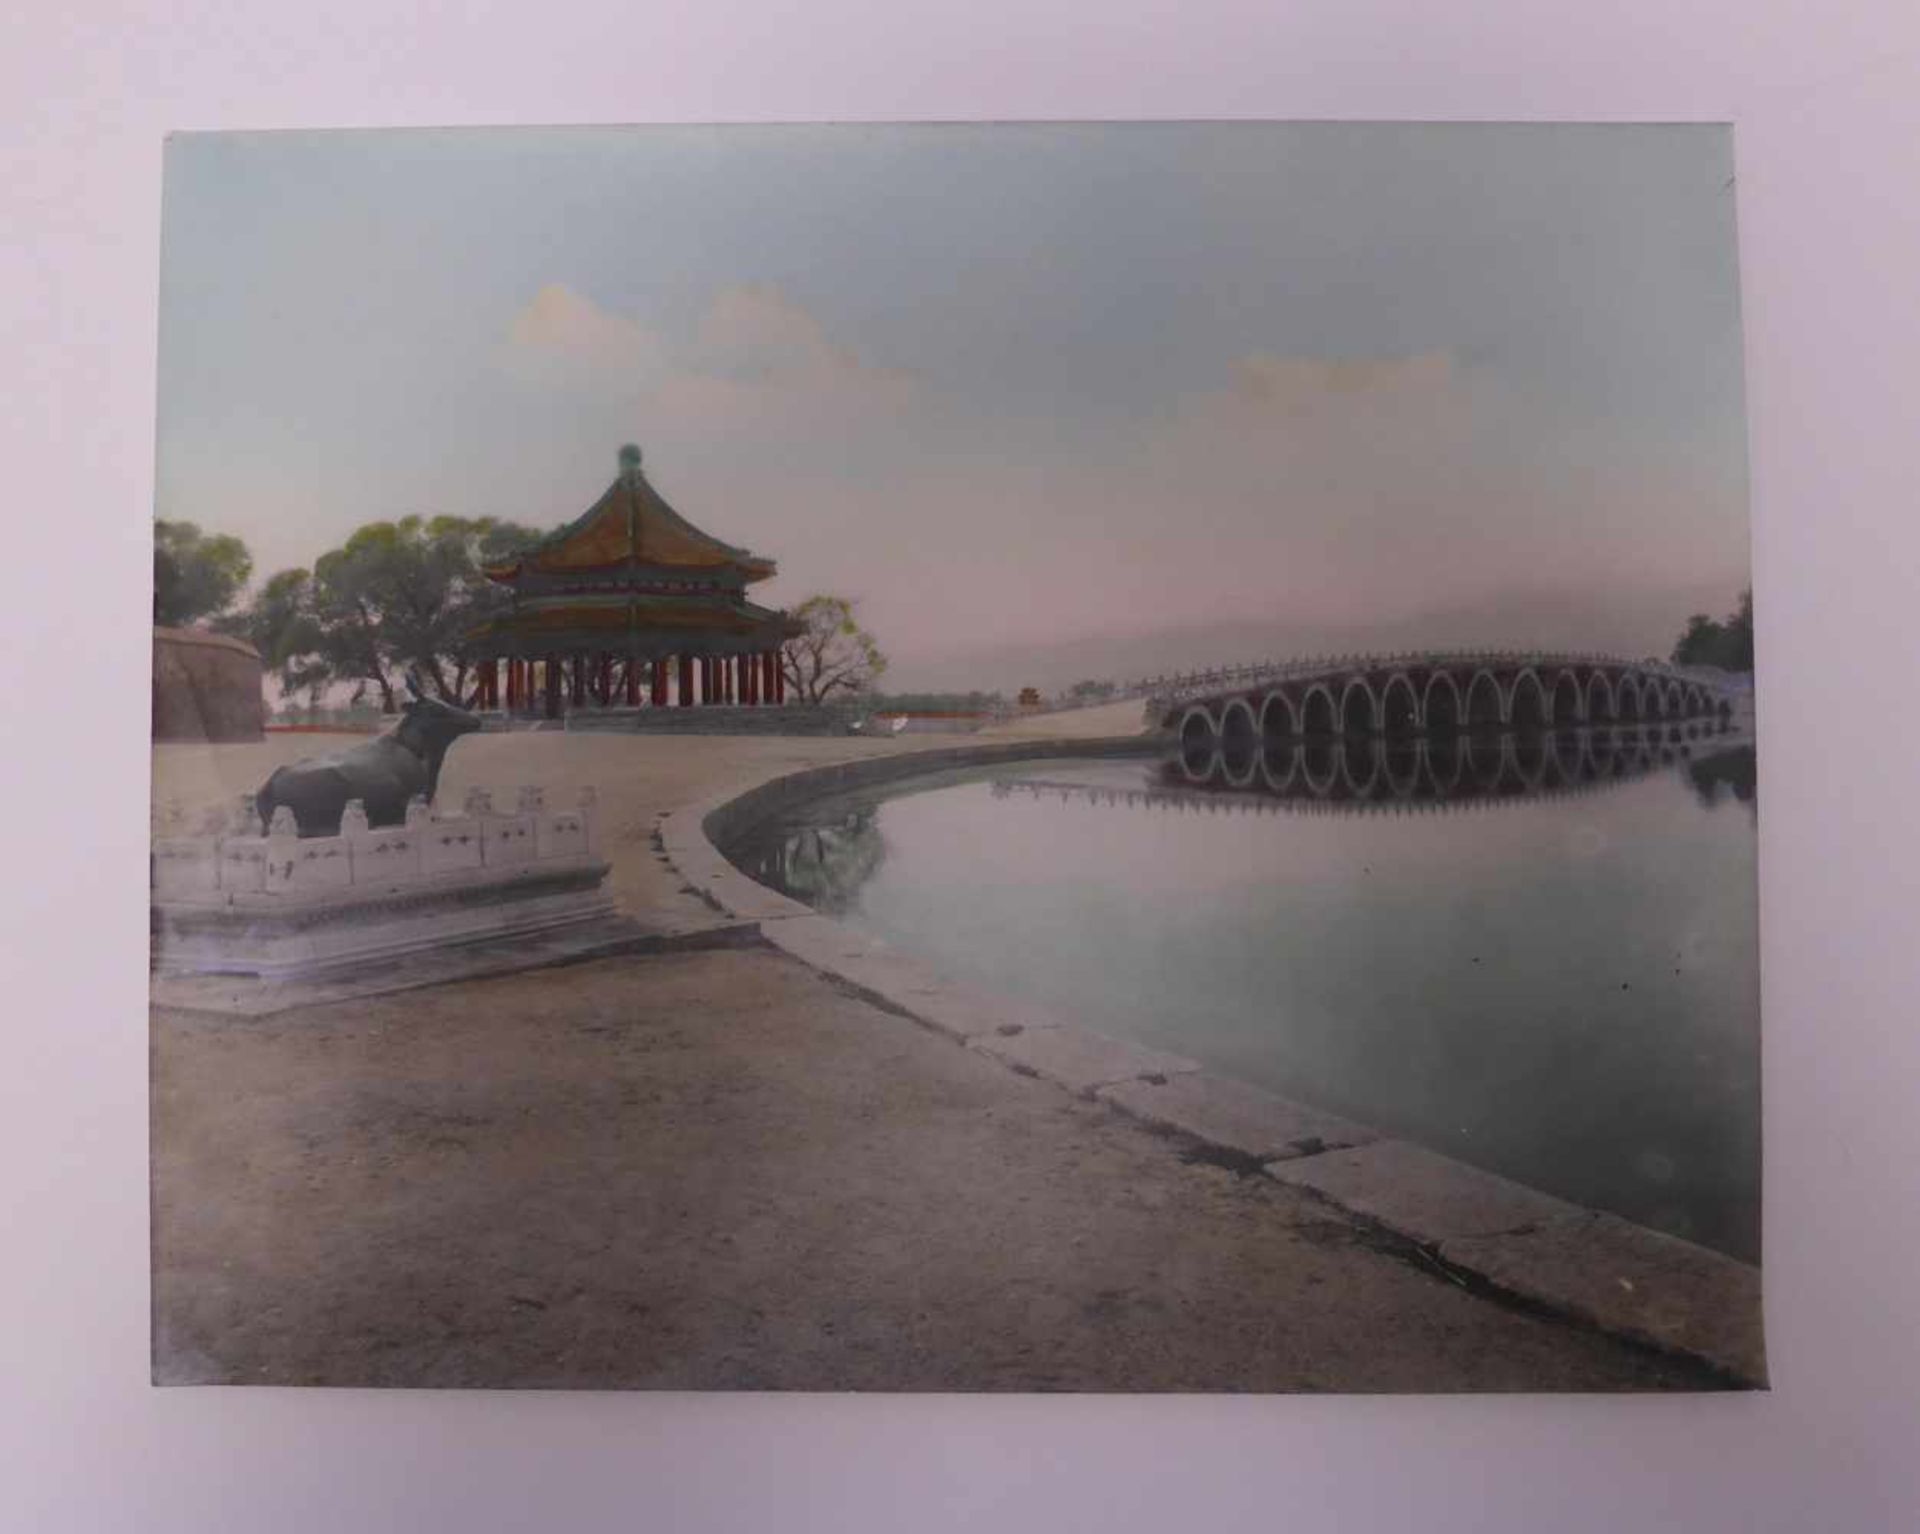 SIEBZEHN HISTORISCHE FOTOS DER VERBOTENEN STADT UND VOM SOMMERPALAST. China. Datiert 1938 auf dem - Bild 10 aus 19